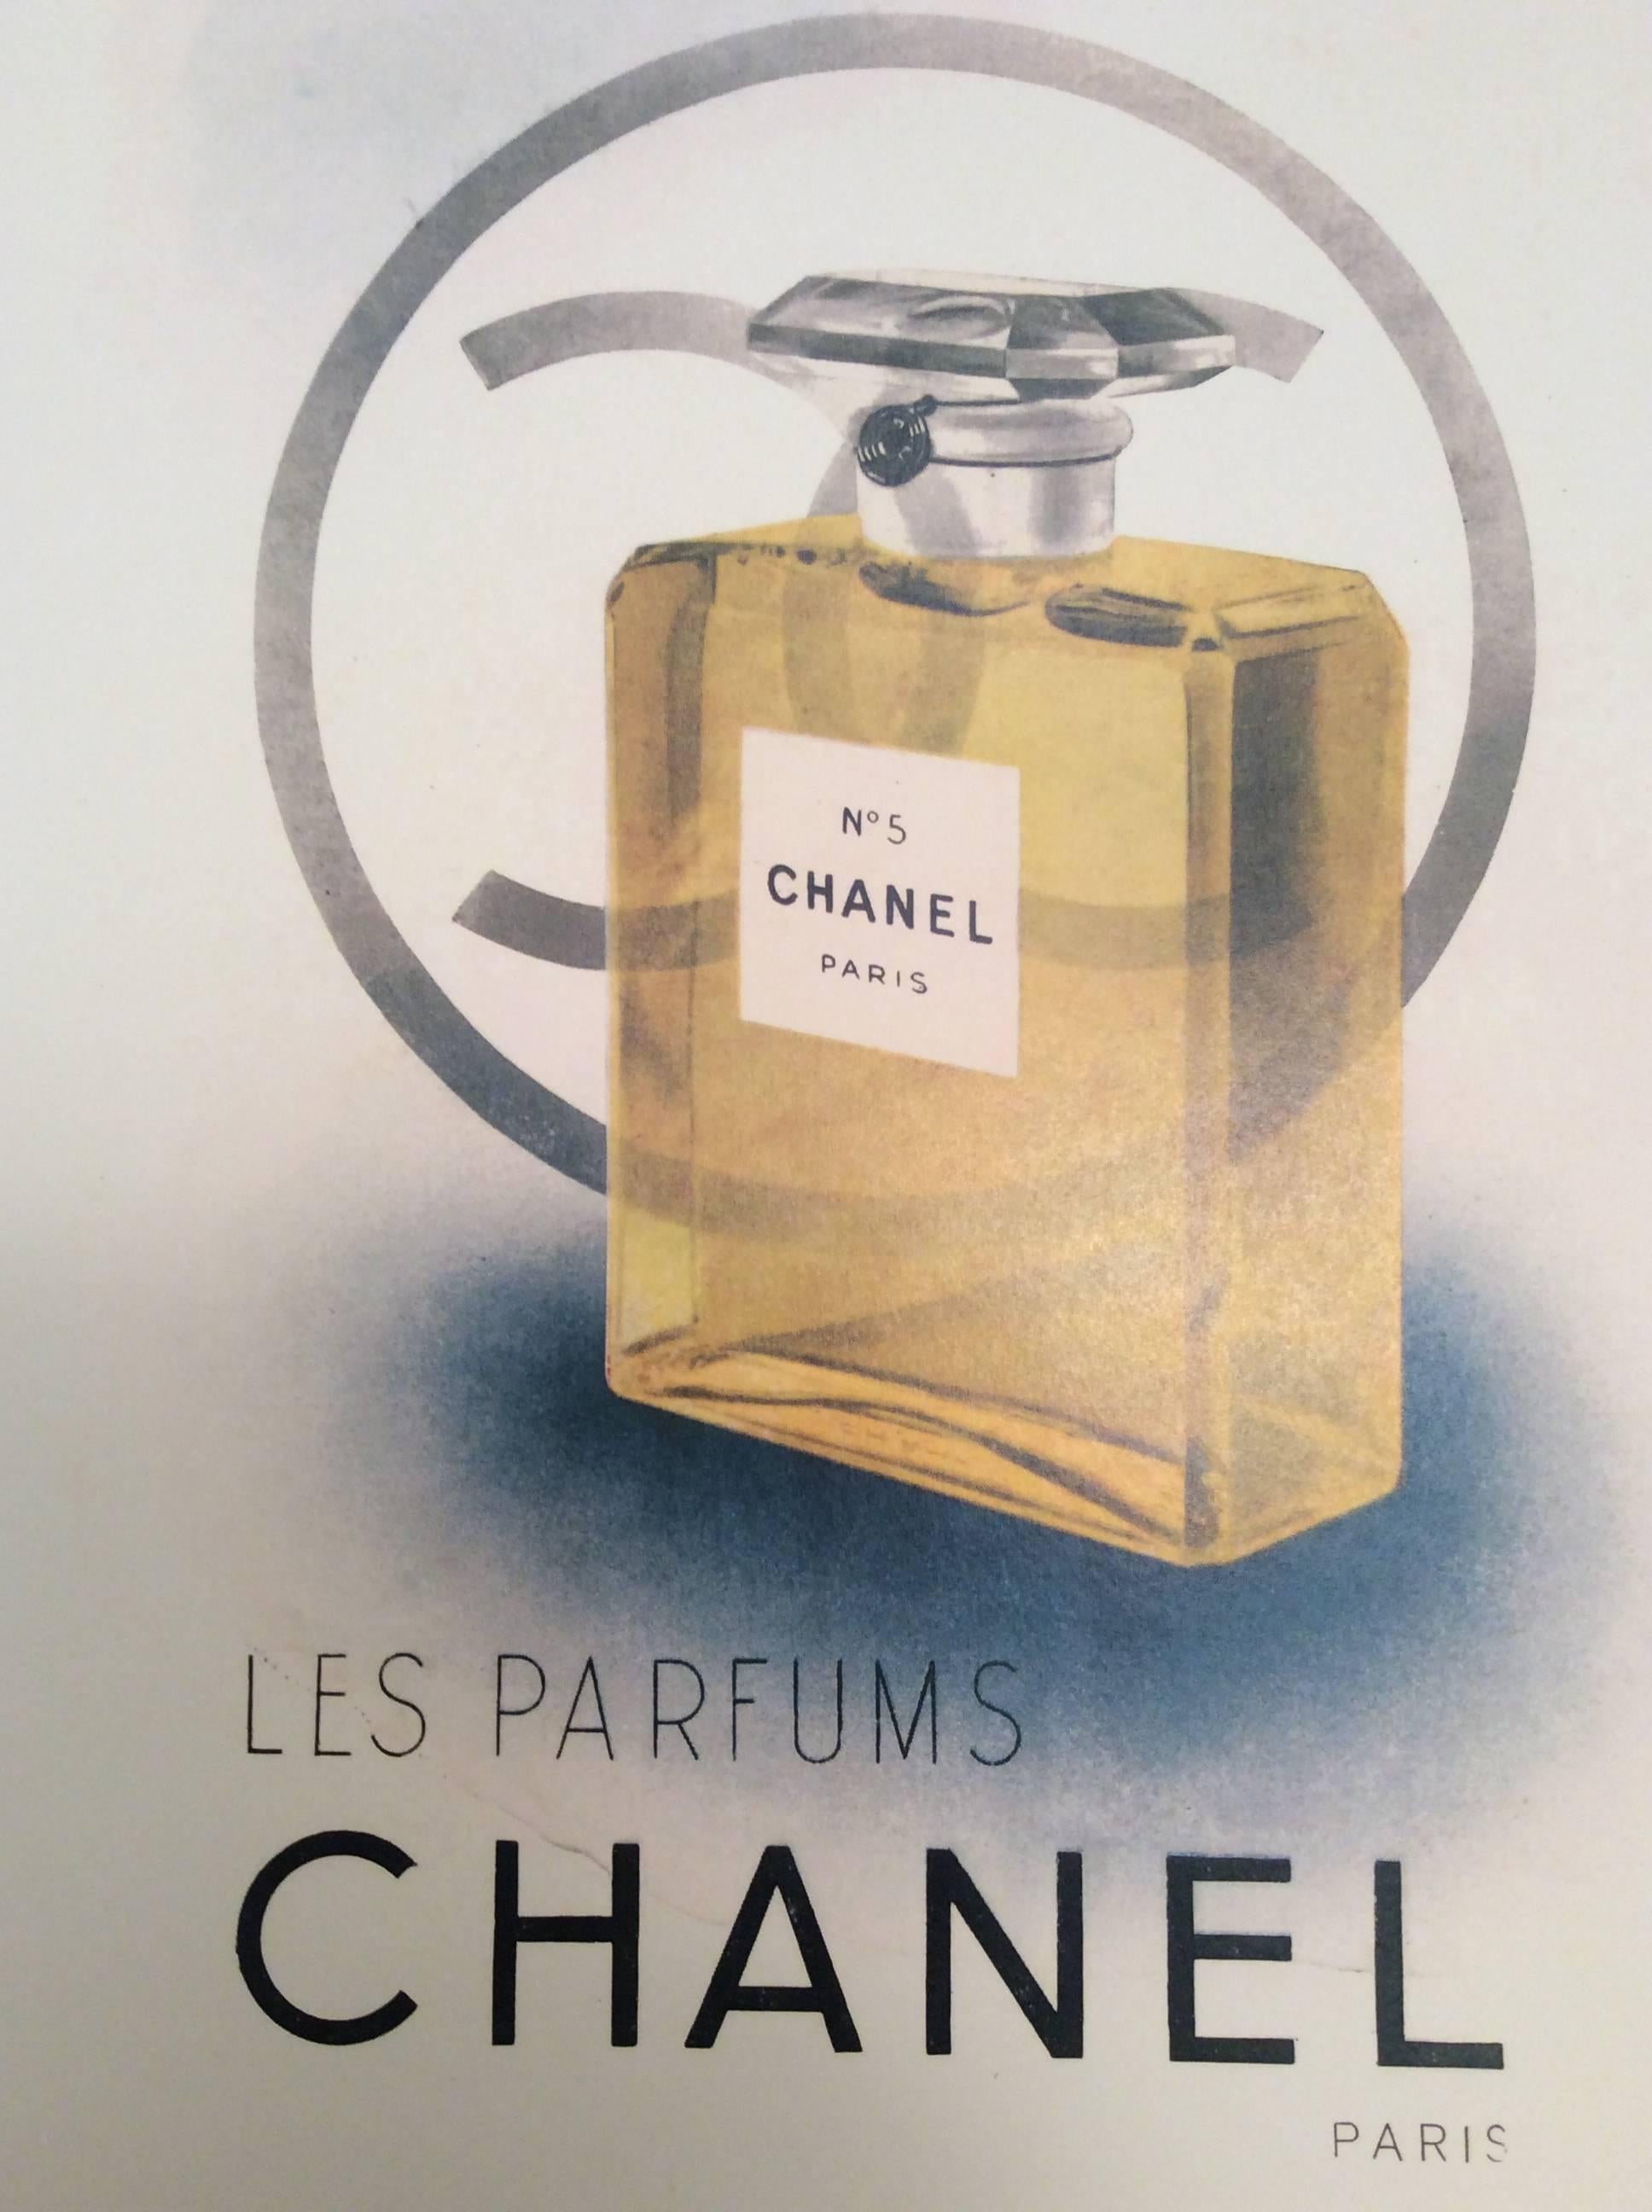 1957 Chanel Eau de Cologne Advertisement - A Gentleman's